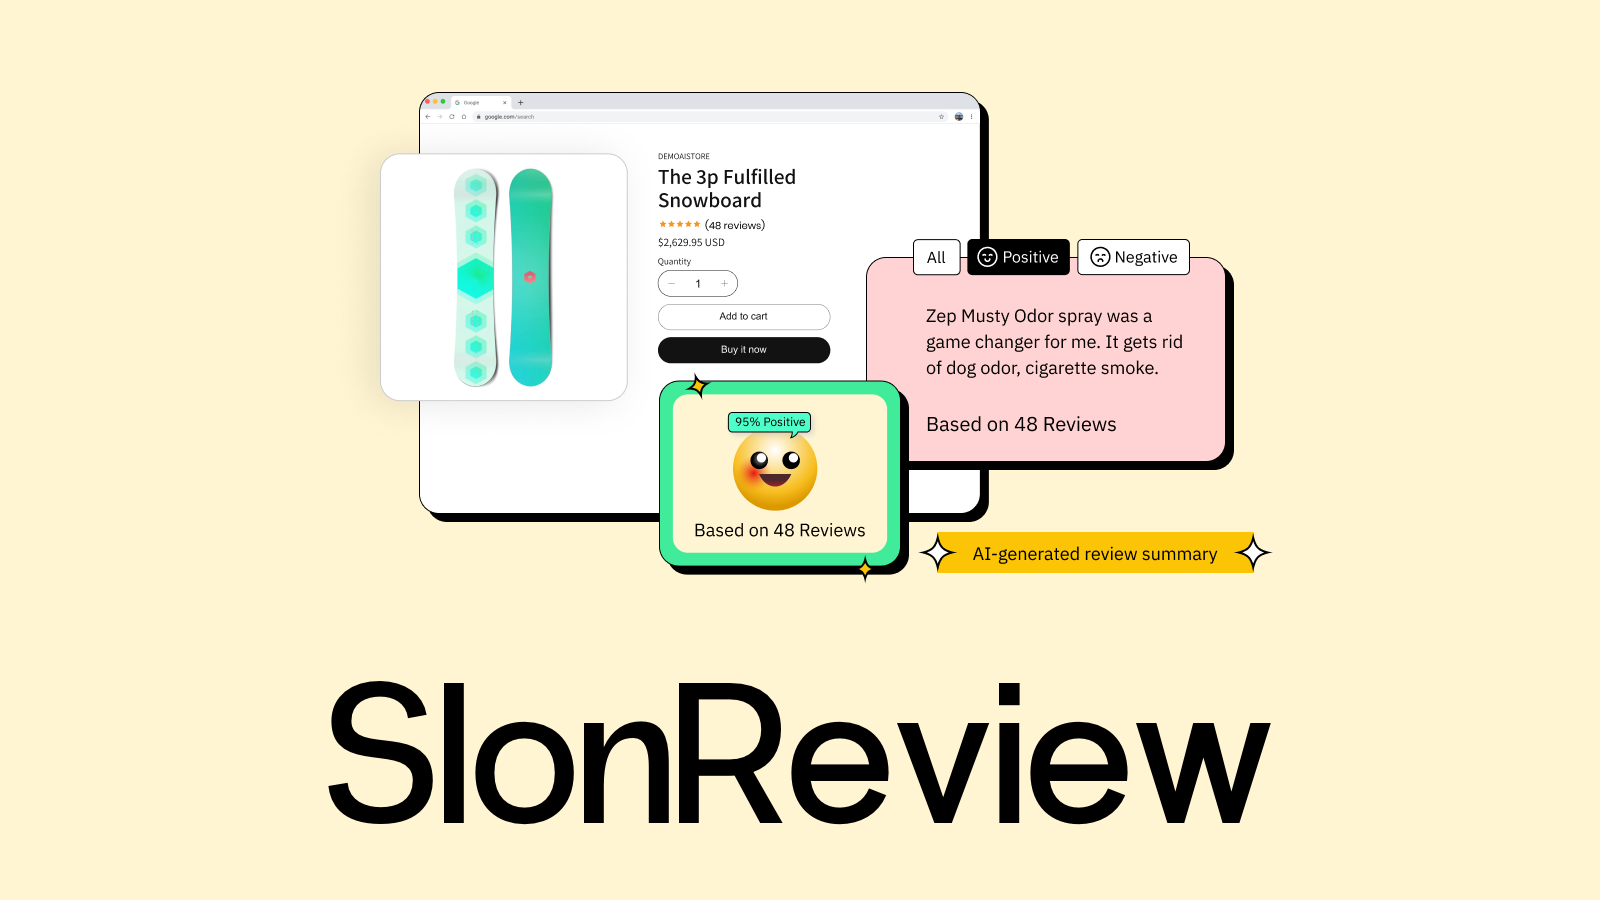 Slon Review 应用功能